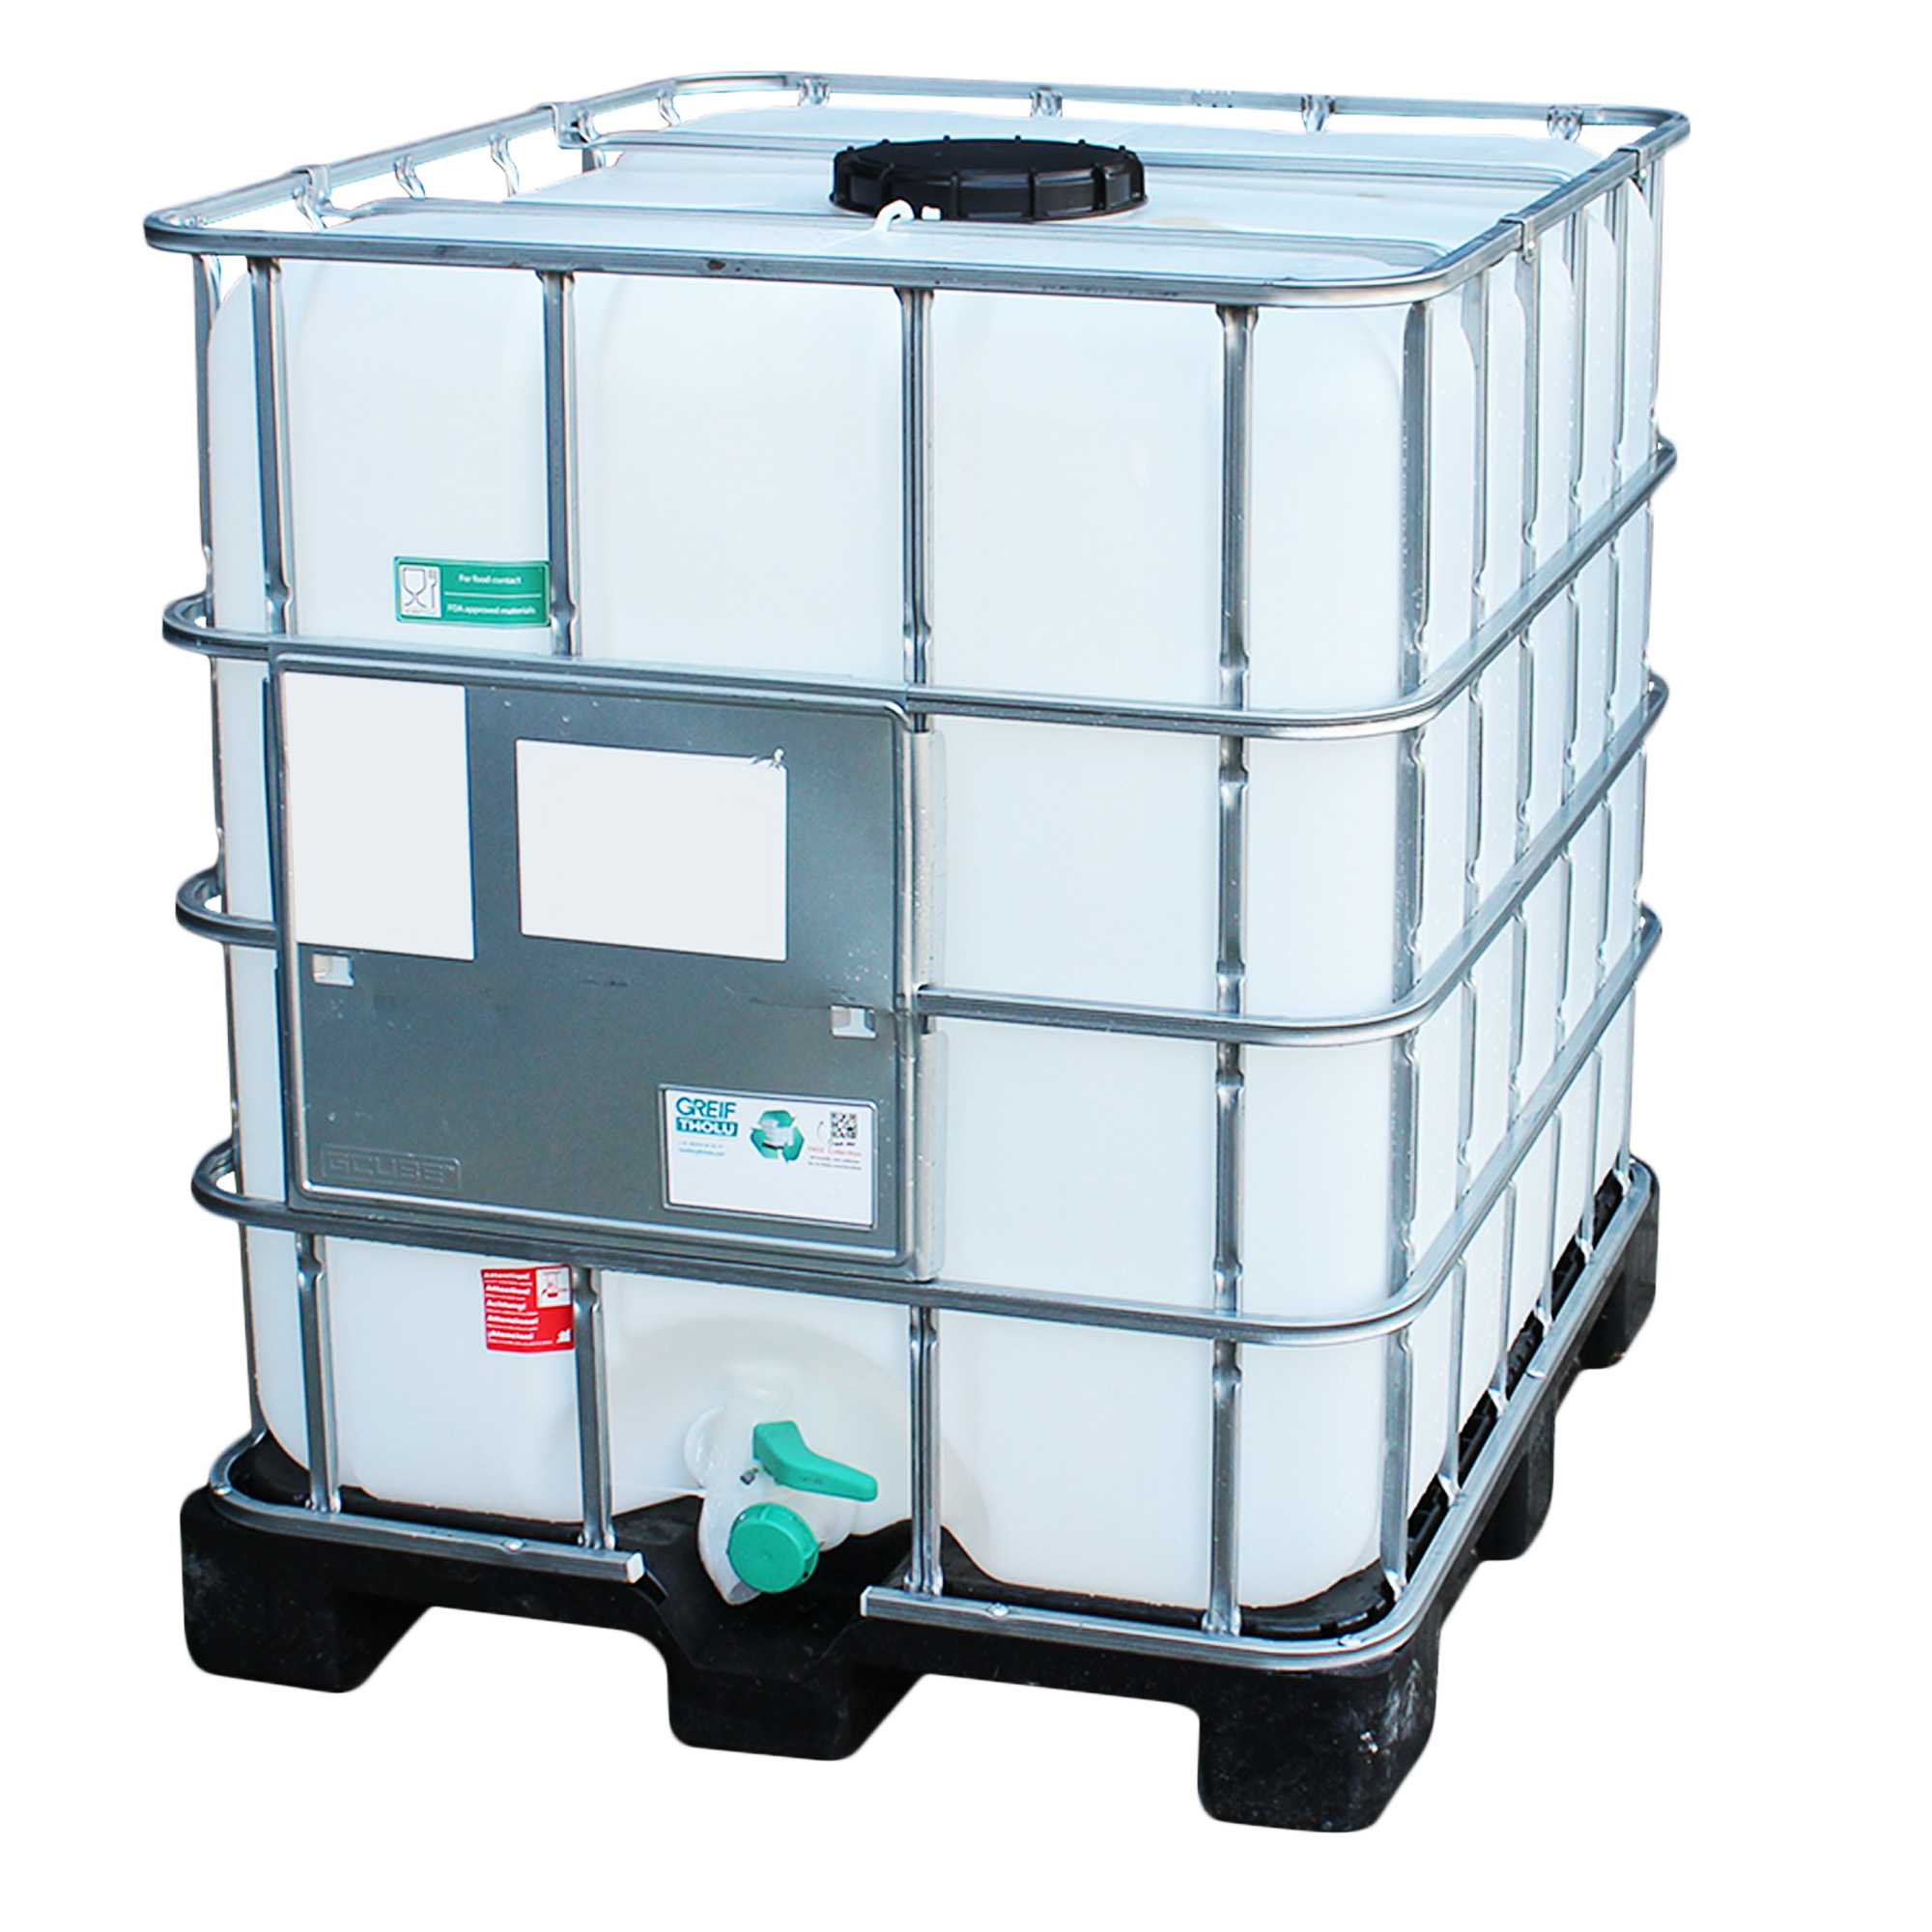 IBC Container 1000l auf Kunststoffpalette - gebraucht, restentleert, lebensm. Öl